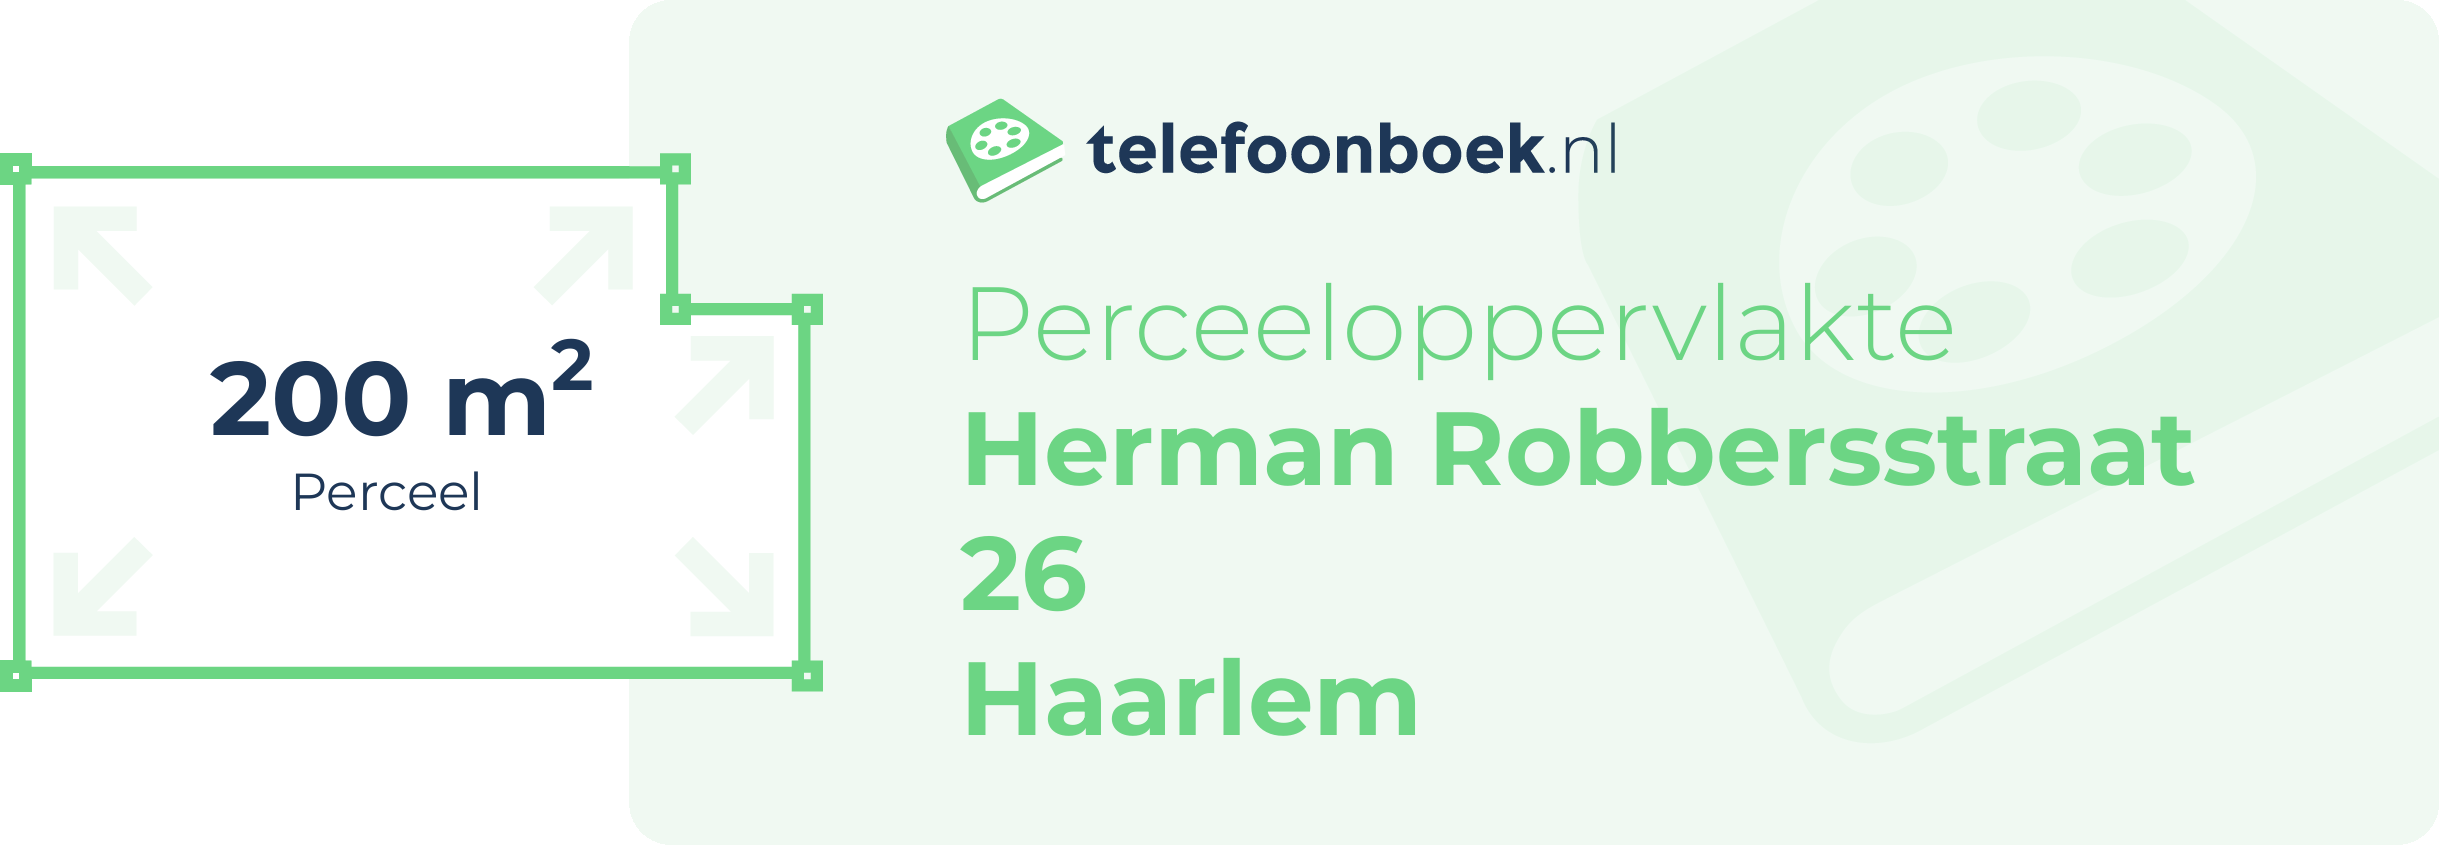 Perceeloppervlakte Herman Robbersstraat 26 Haarlem